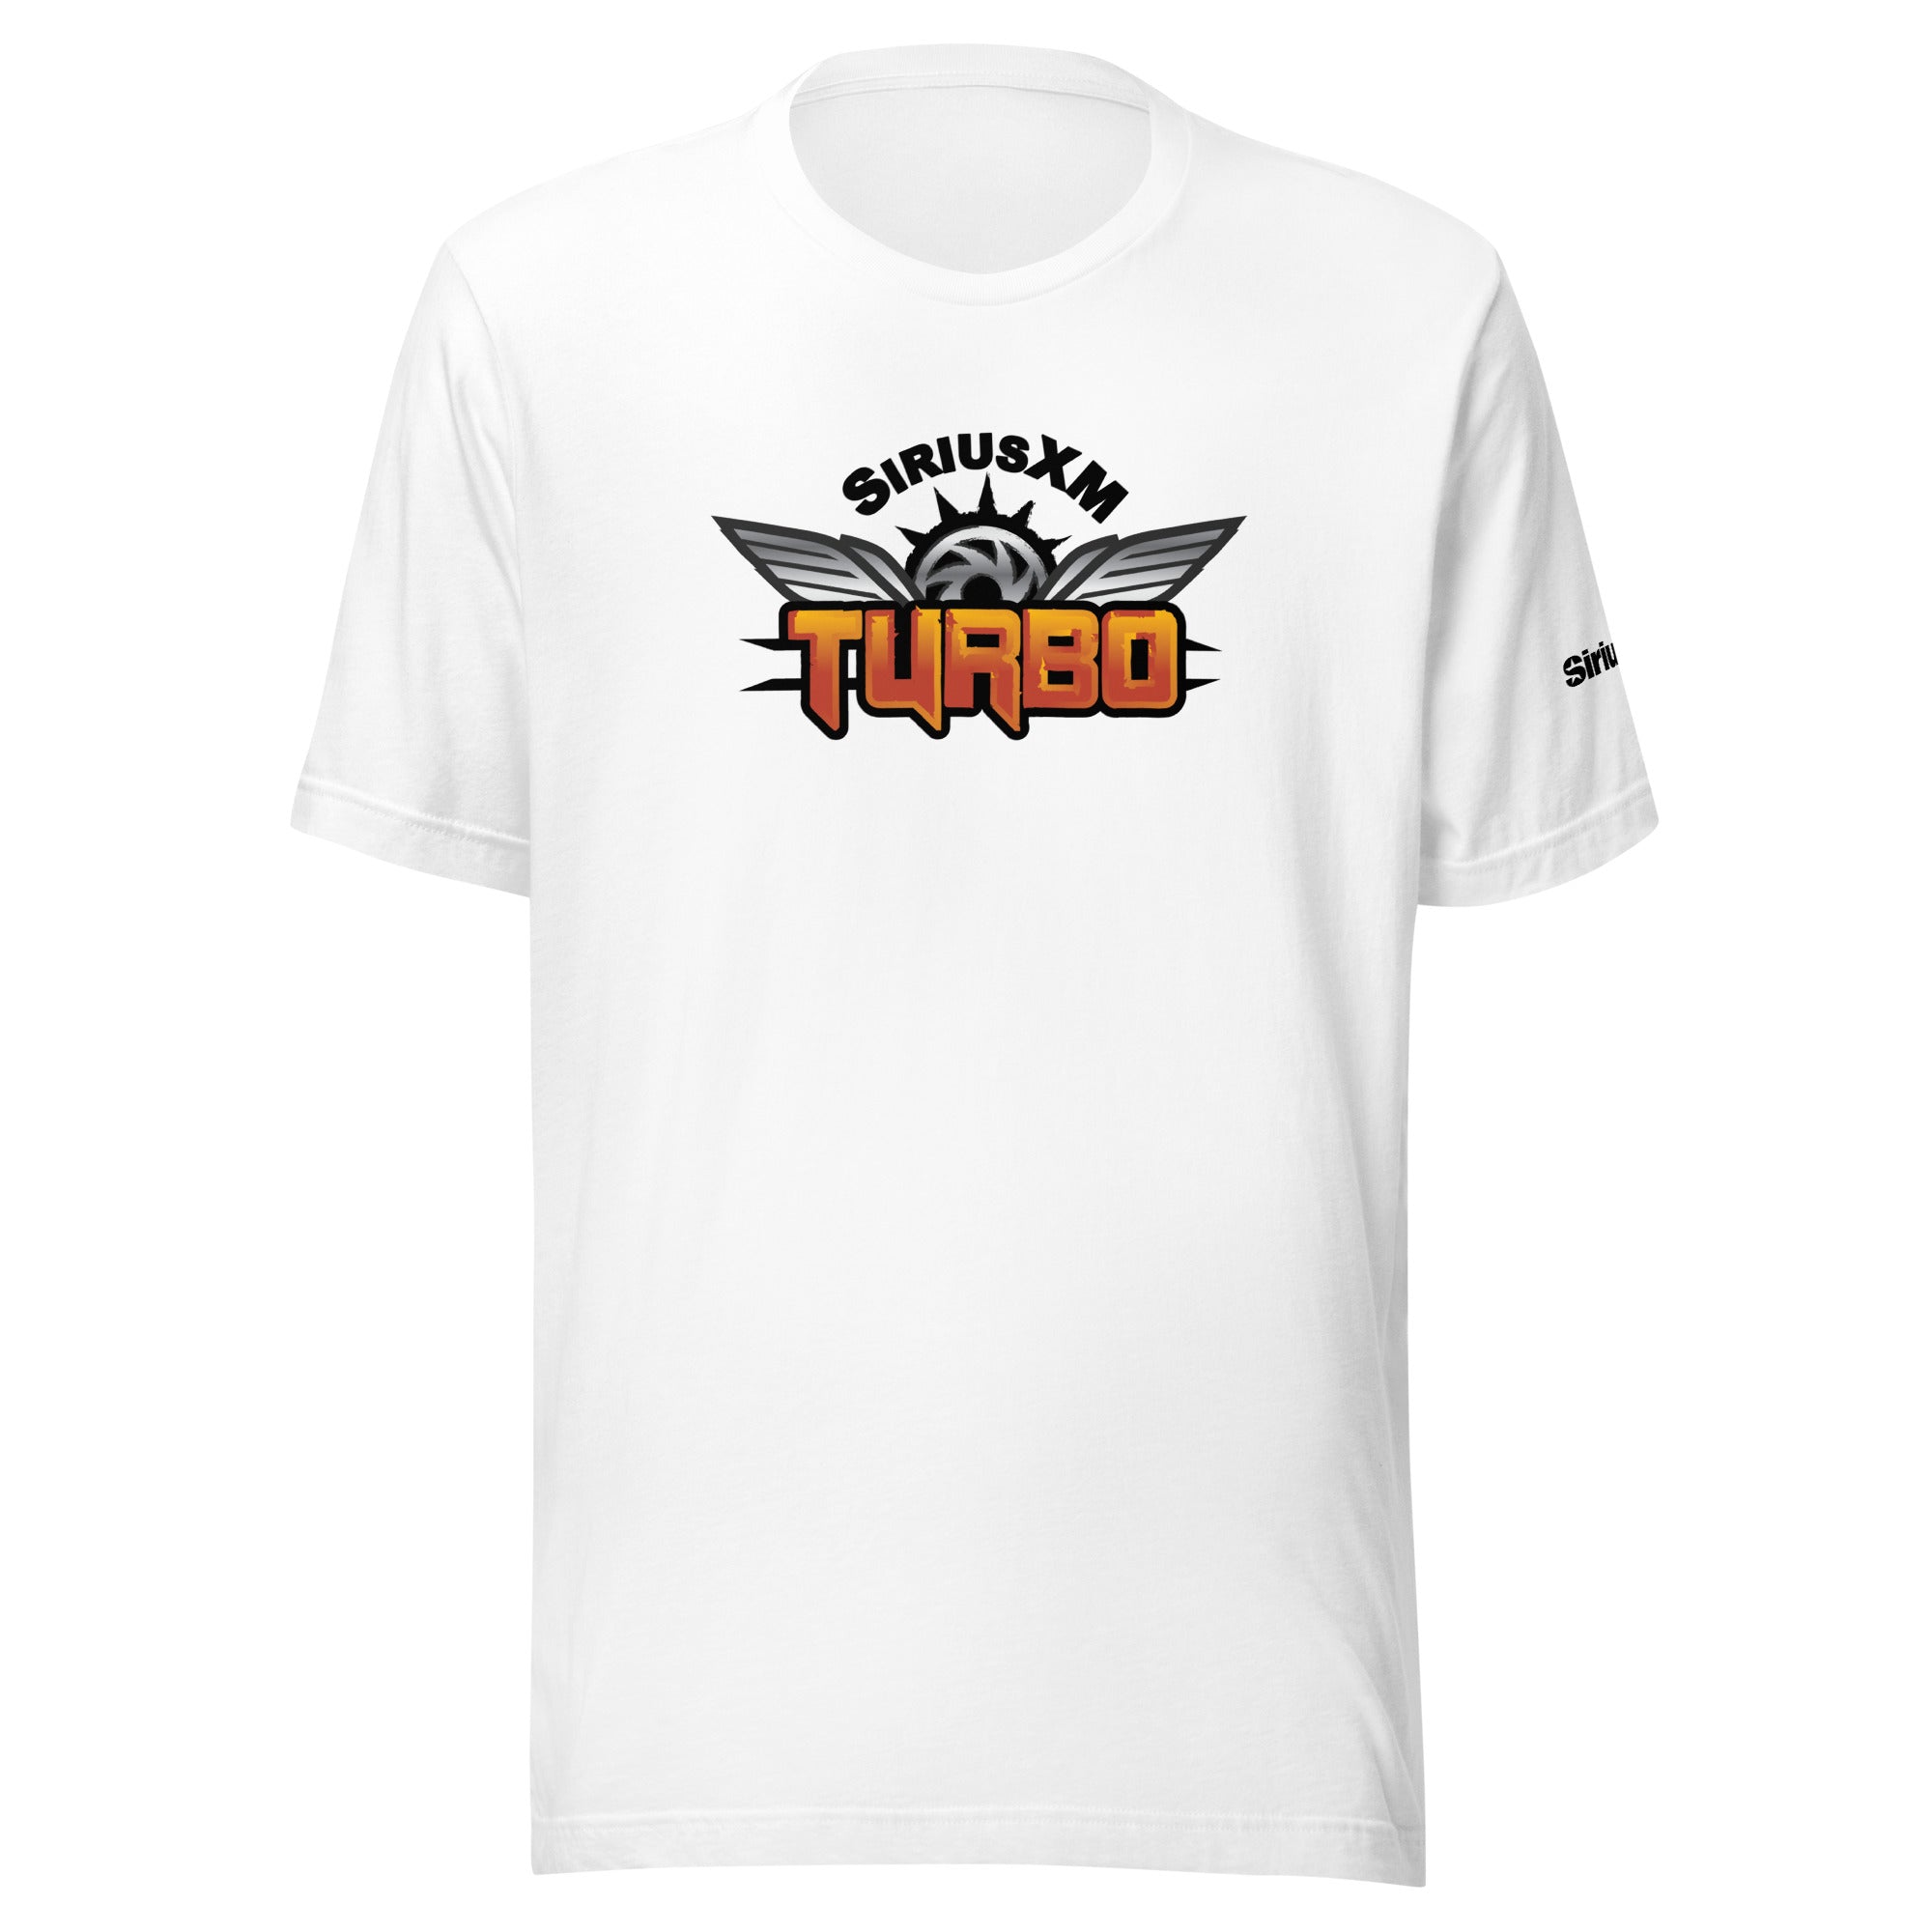 SiriusXM Turbo: T-shirt (White)